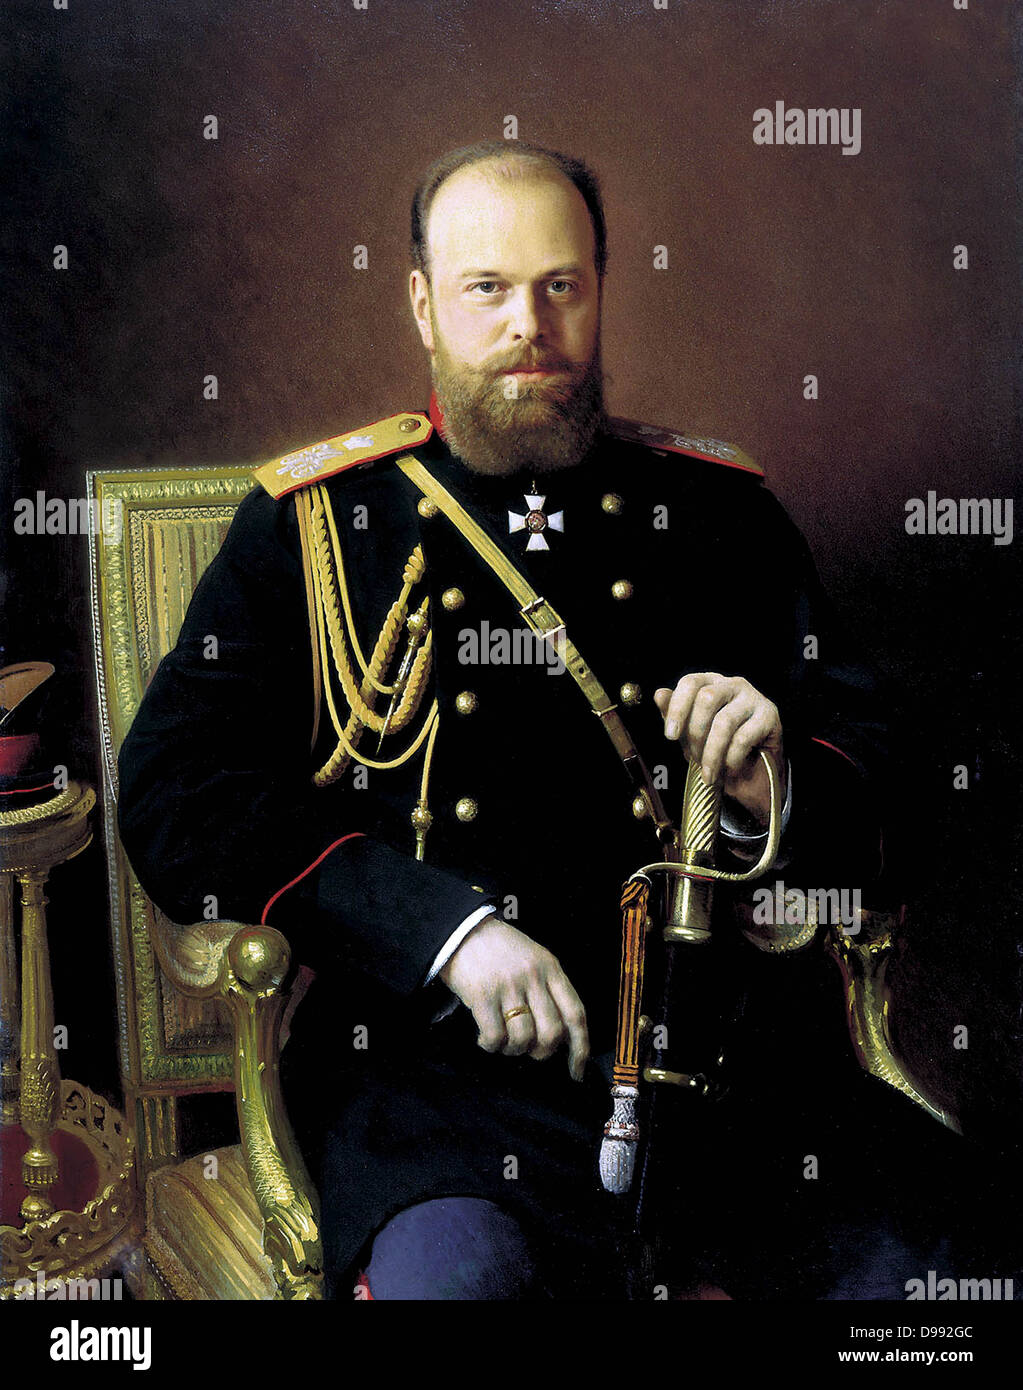 Alexander III. (1845-1894), Zar von Russland von 1881. Portrait c 1886 von Iwan Kramskoi (1837-1887), russischer Maler. Drei Viertel Bild von Alexander in Uniform, die Hand auf Schwert, Sitz freuen. Stockfoto